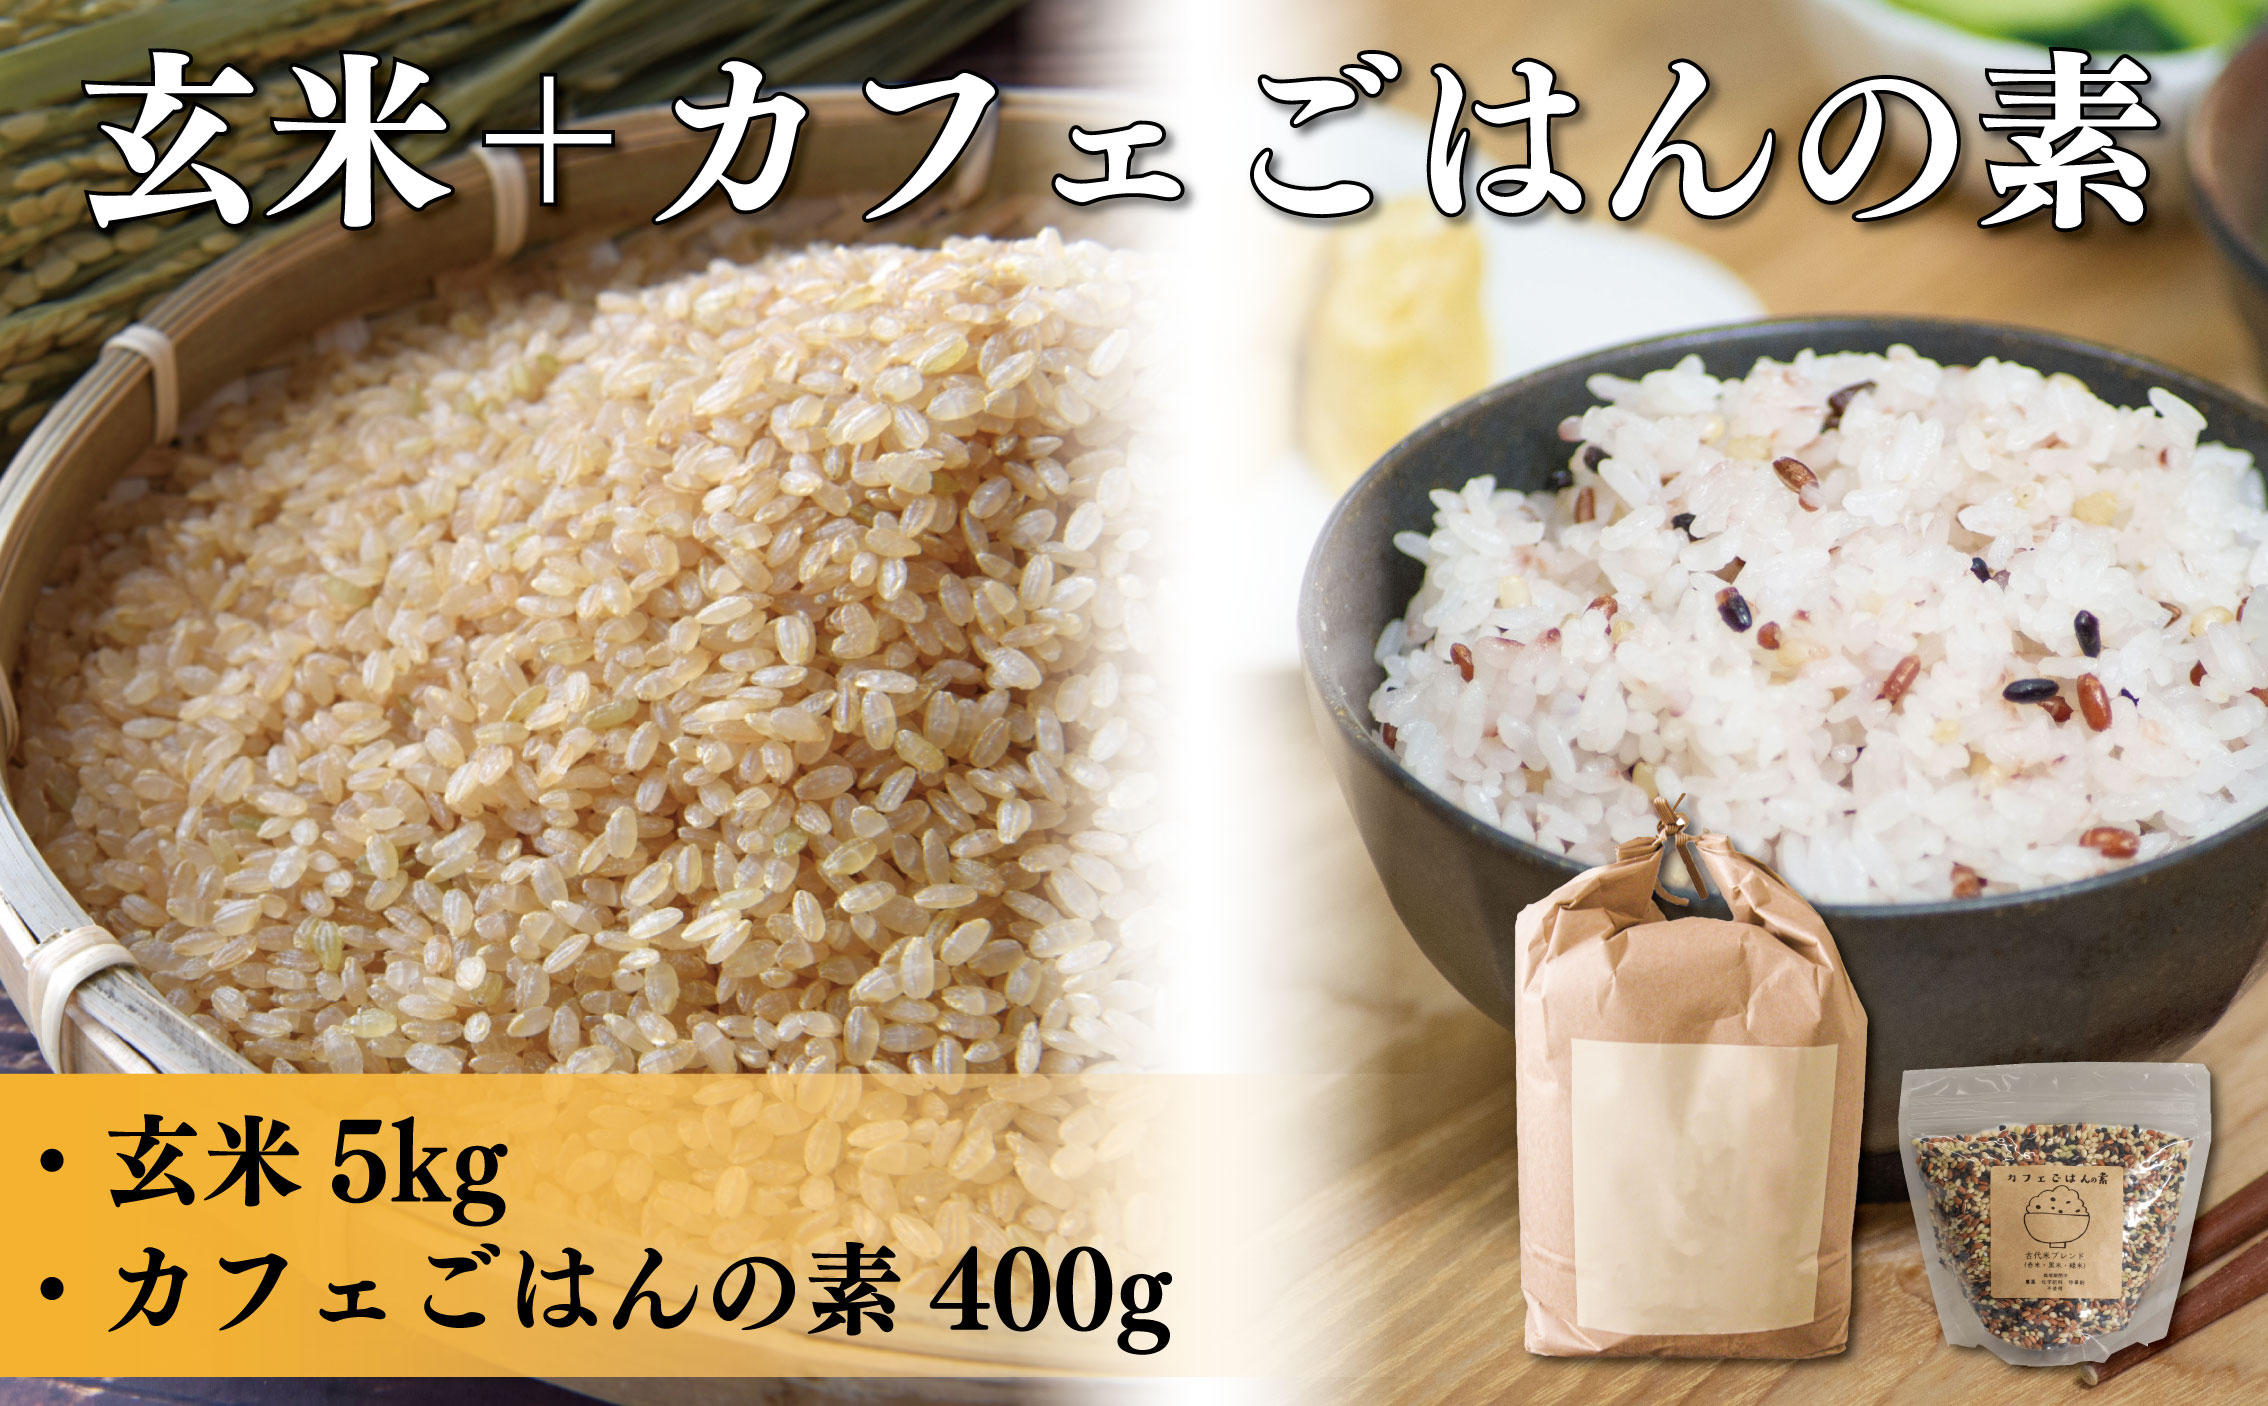 新米 古代米 玄米 詰め合わせ お米 にこまる 約5kg 約5キロ カフェごはんの素 約400g 約400グラム セット 栽培期間中農薬不使用 